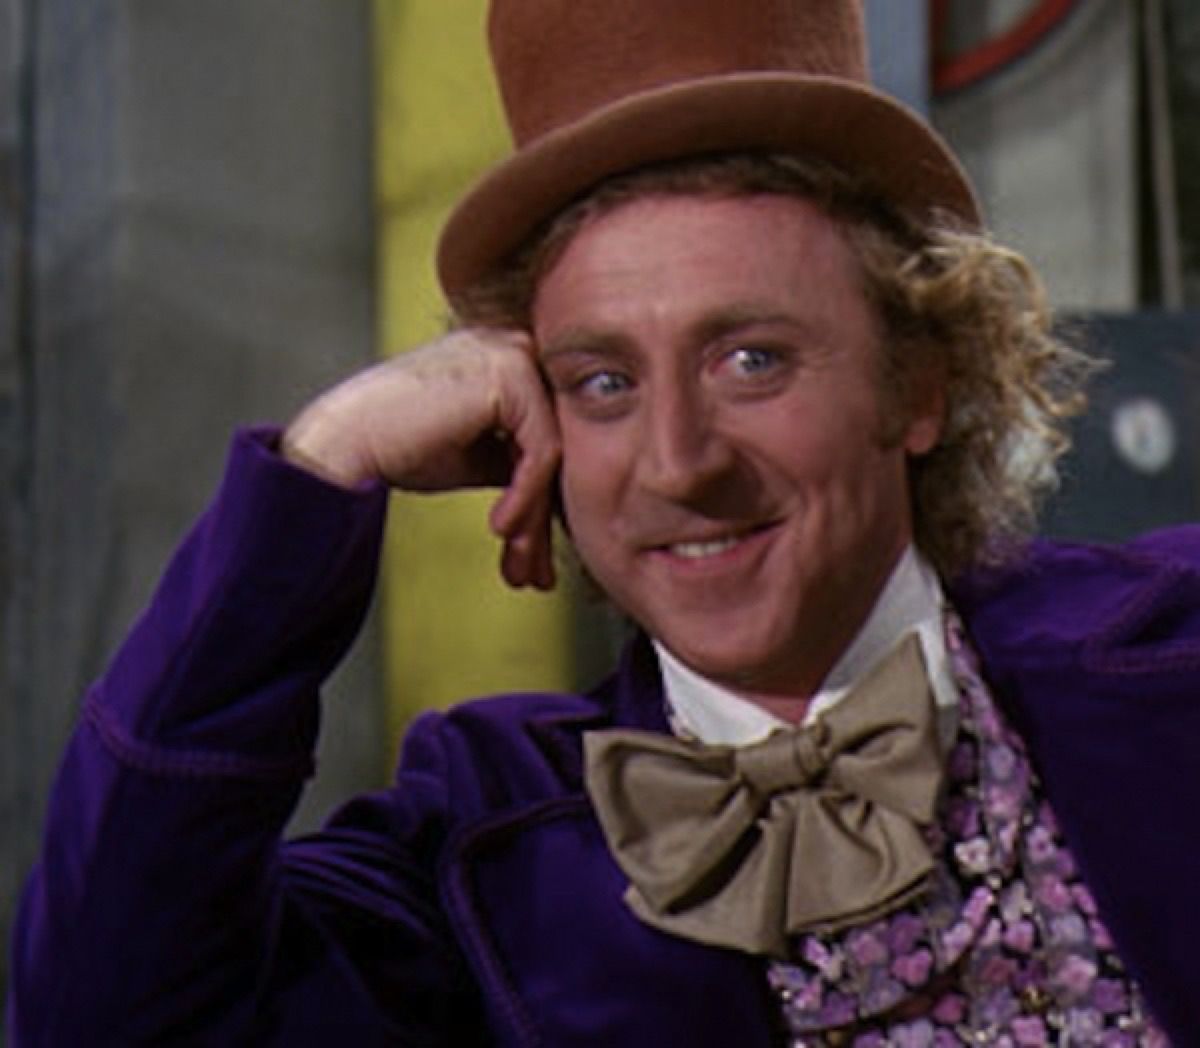 Gene Wilder amb barret de copa, corbata de llaç i esmòquing porpra com Willy Wonka